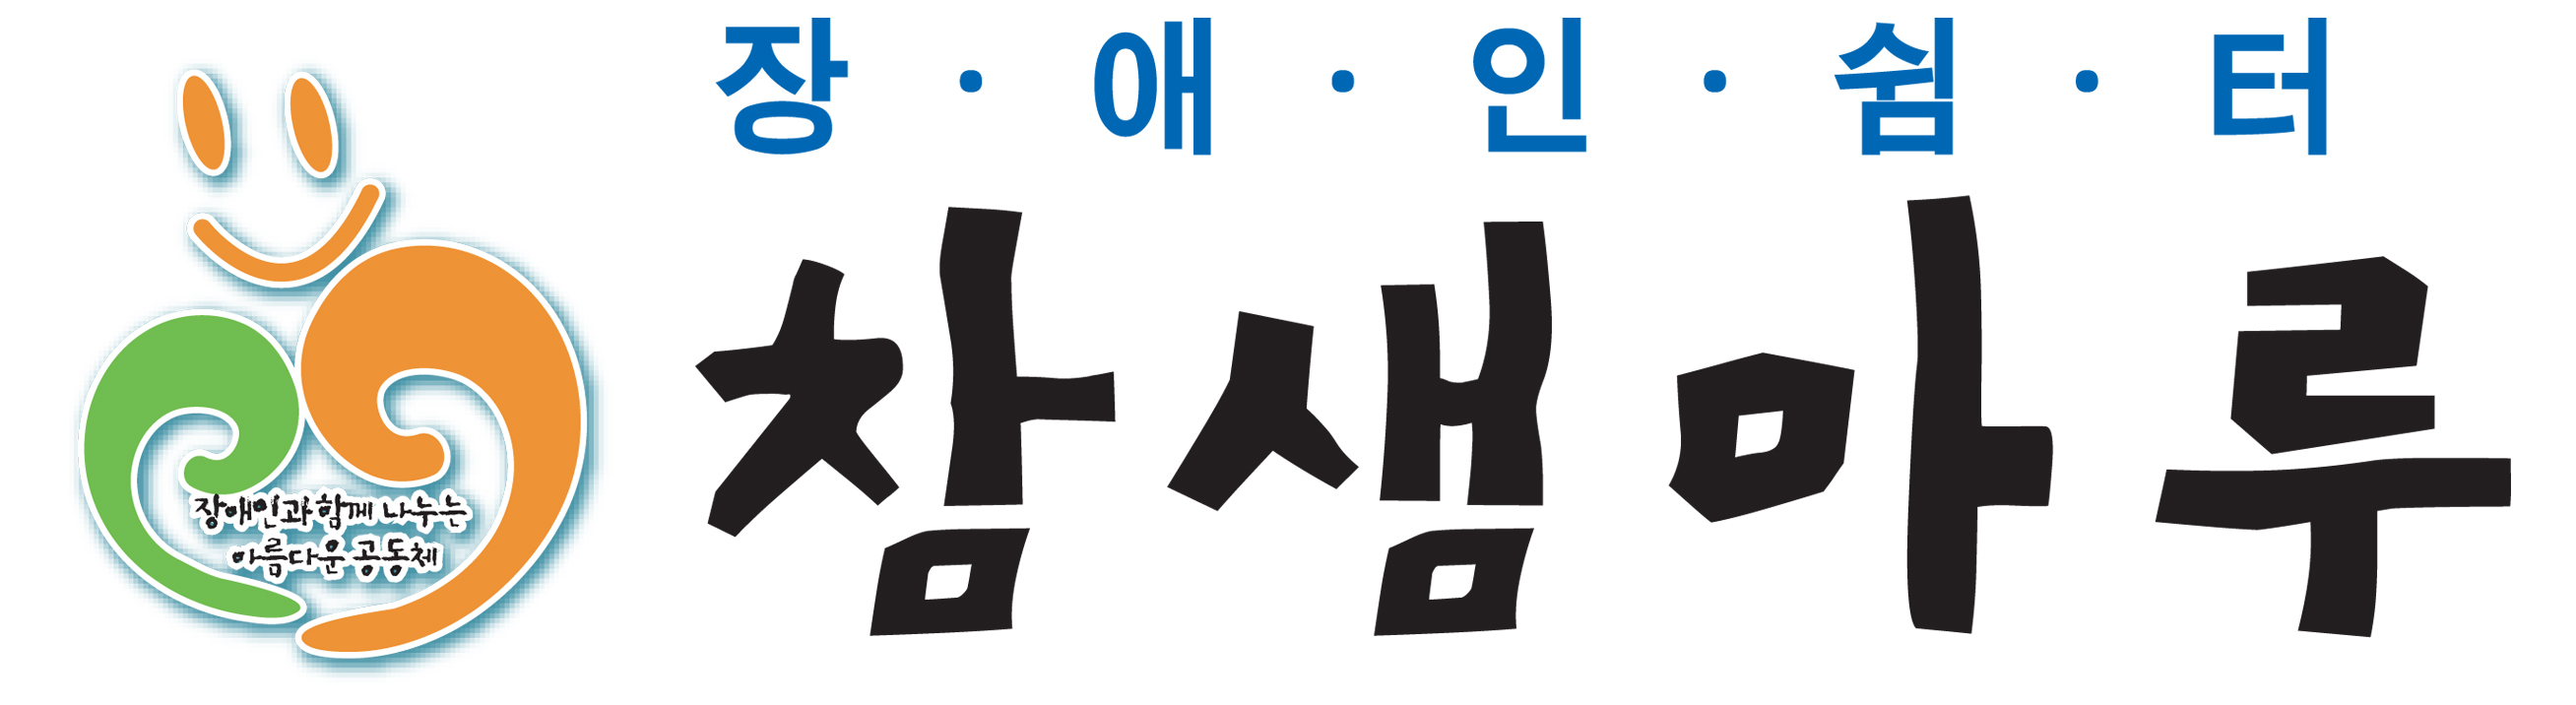 참샘마루 Logo & CI